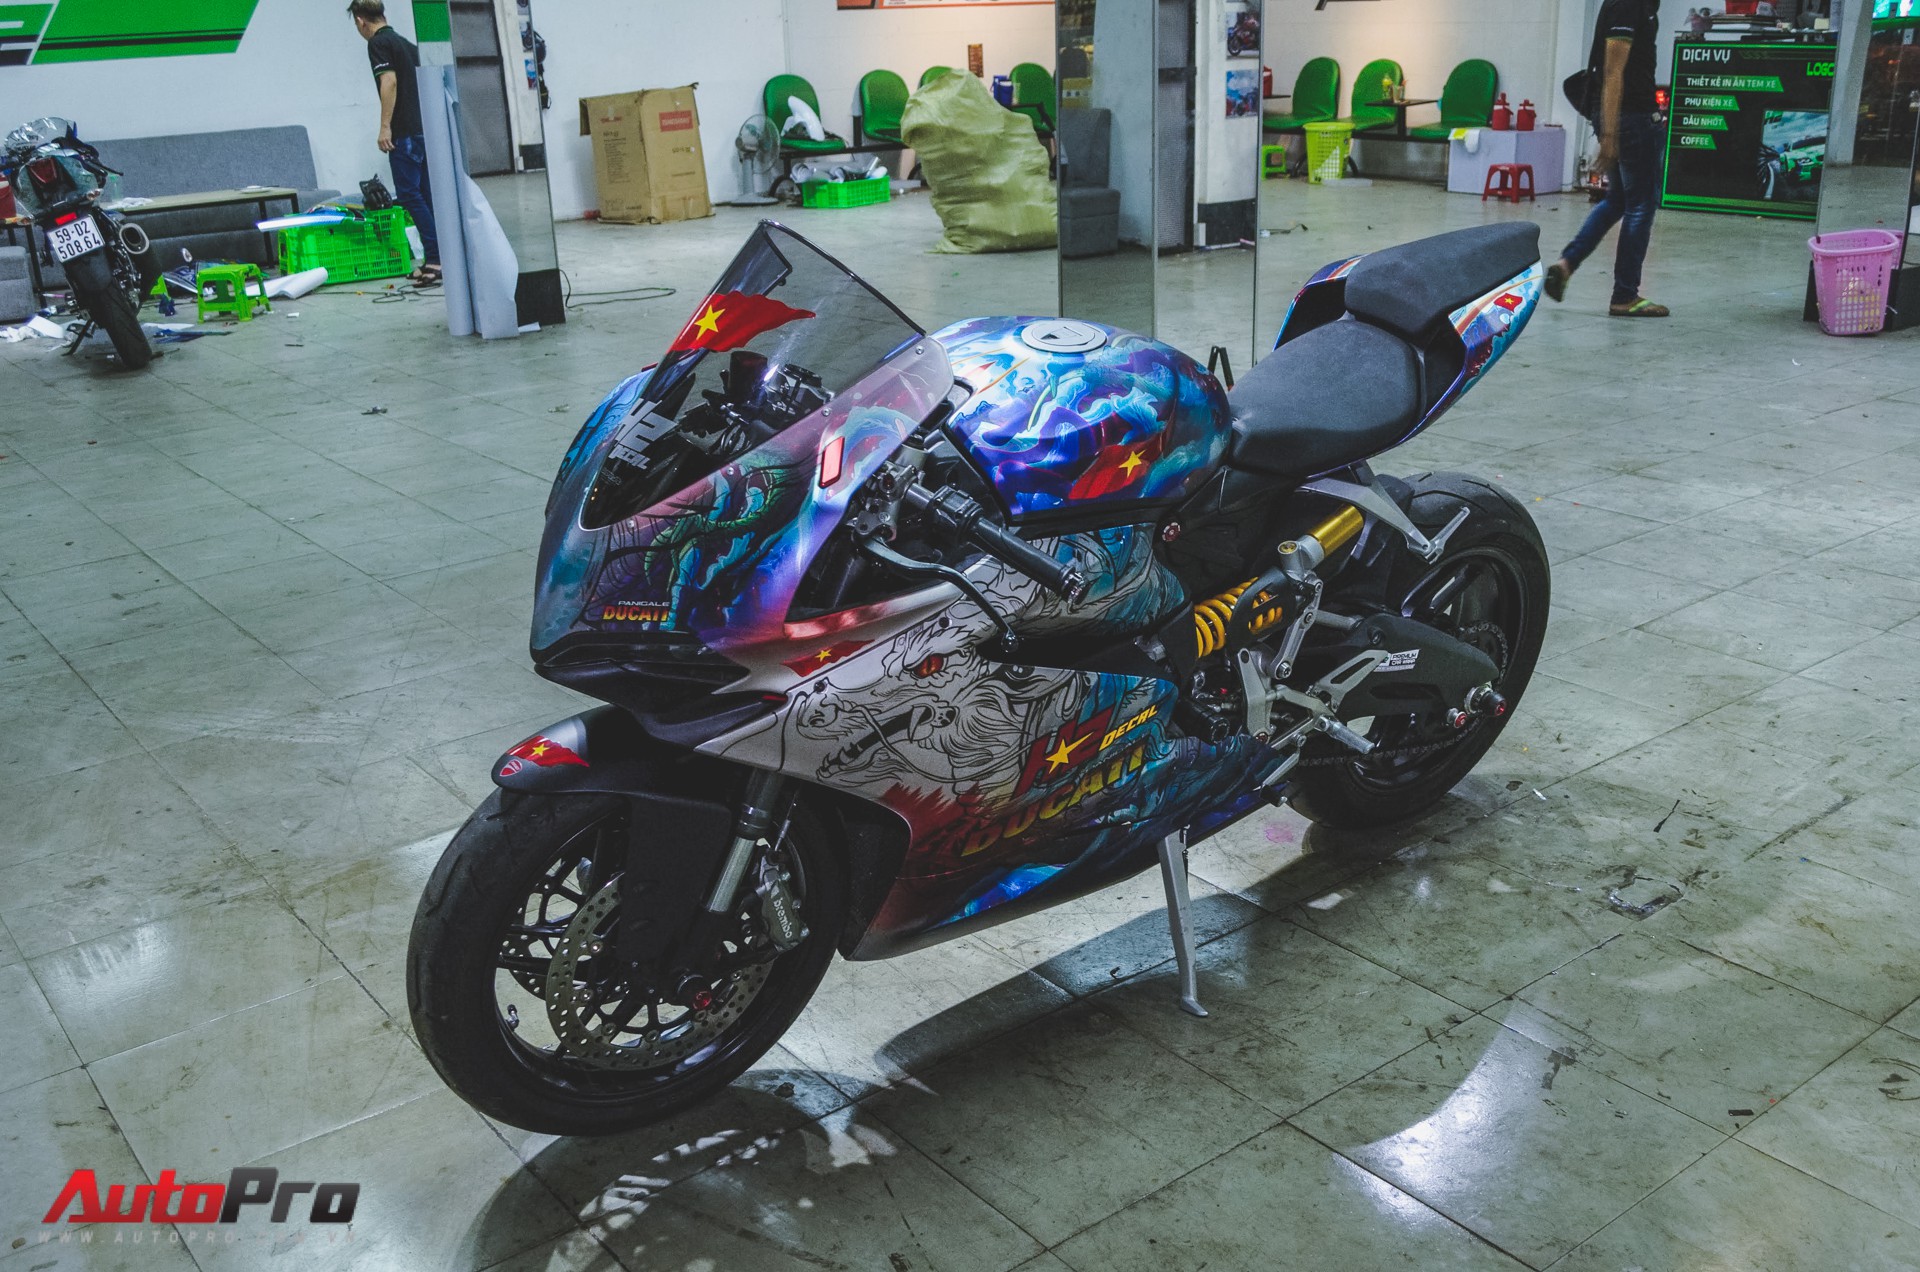 Bạn có muốn xem chiếc xe Ducati 959 Panigale bản độ rồng với thiết kế đầy cảm hứng này không? Với các chi tiết được khắc họa kỹ lưỡng và màu sơn sáng tạo, đây là một tác phẩm nghệ thuật đáng nhìn.